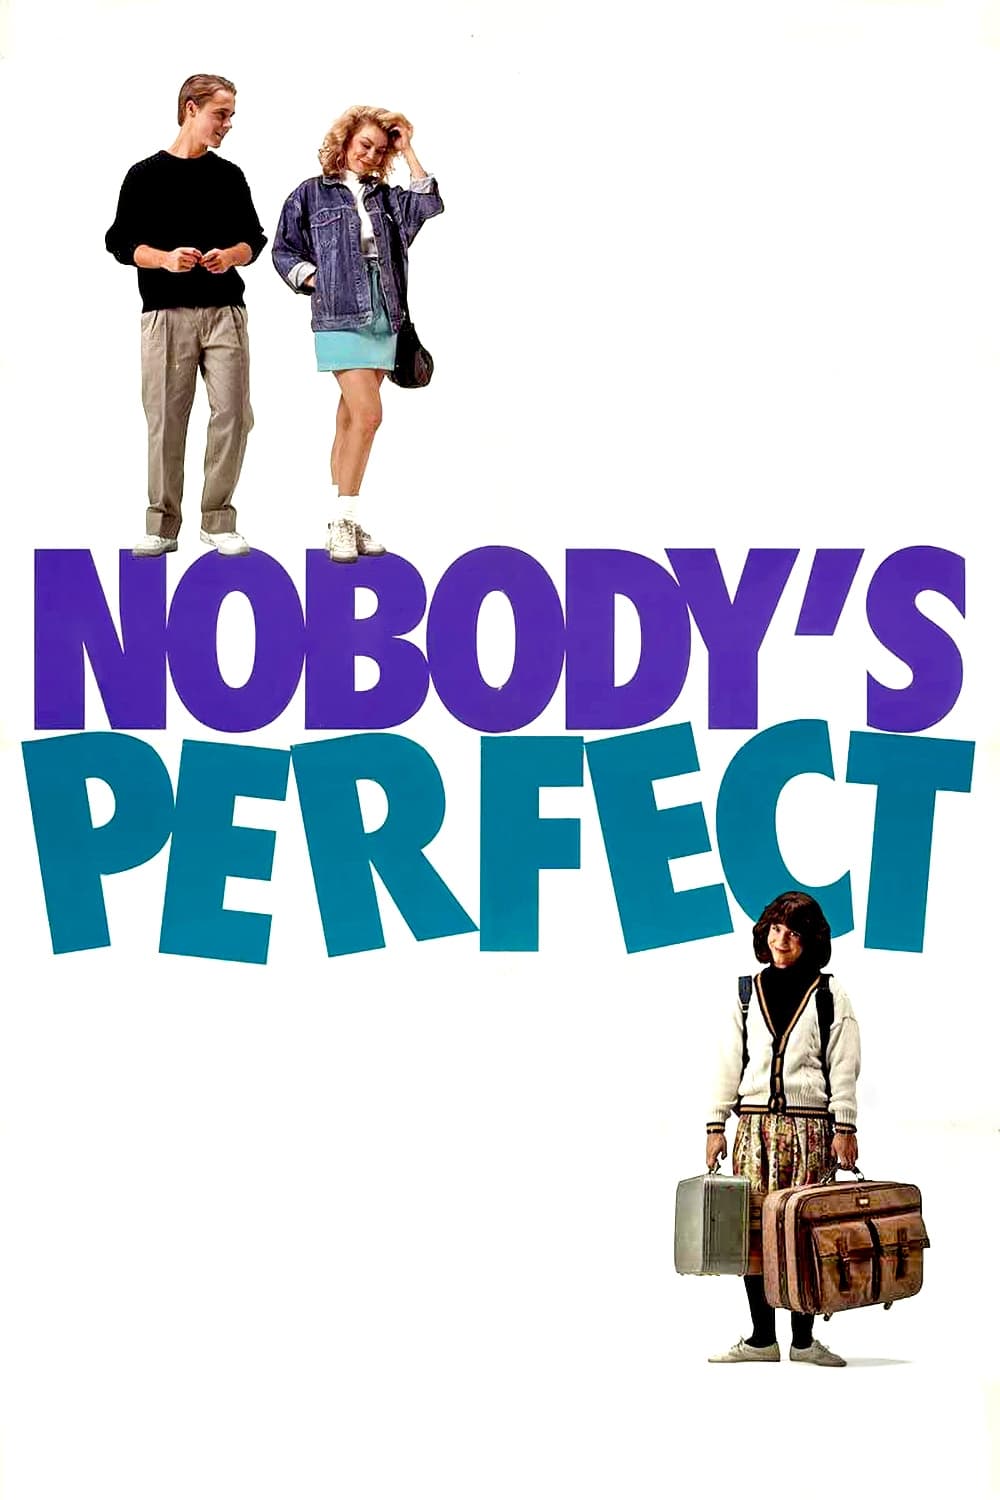 Nobody's Perfect (1990)